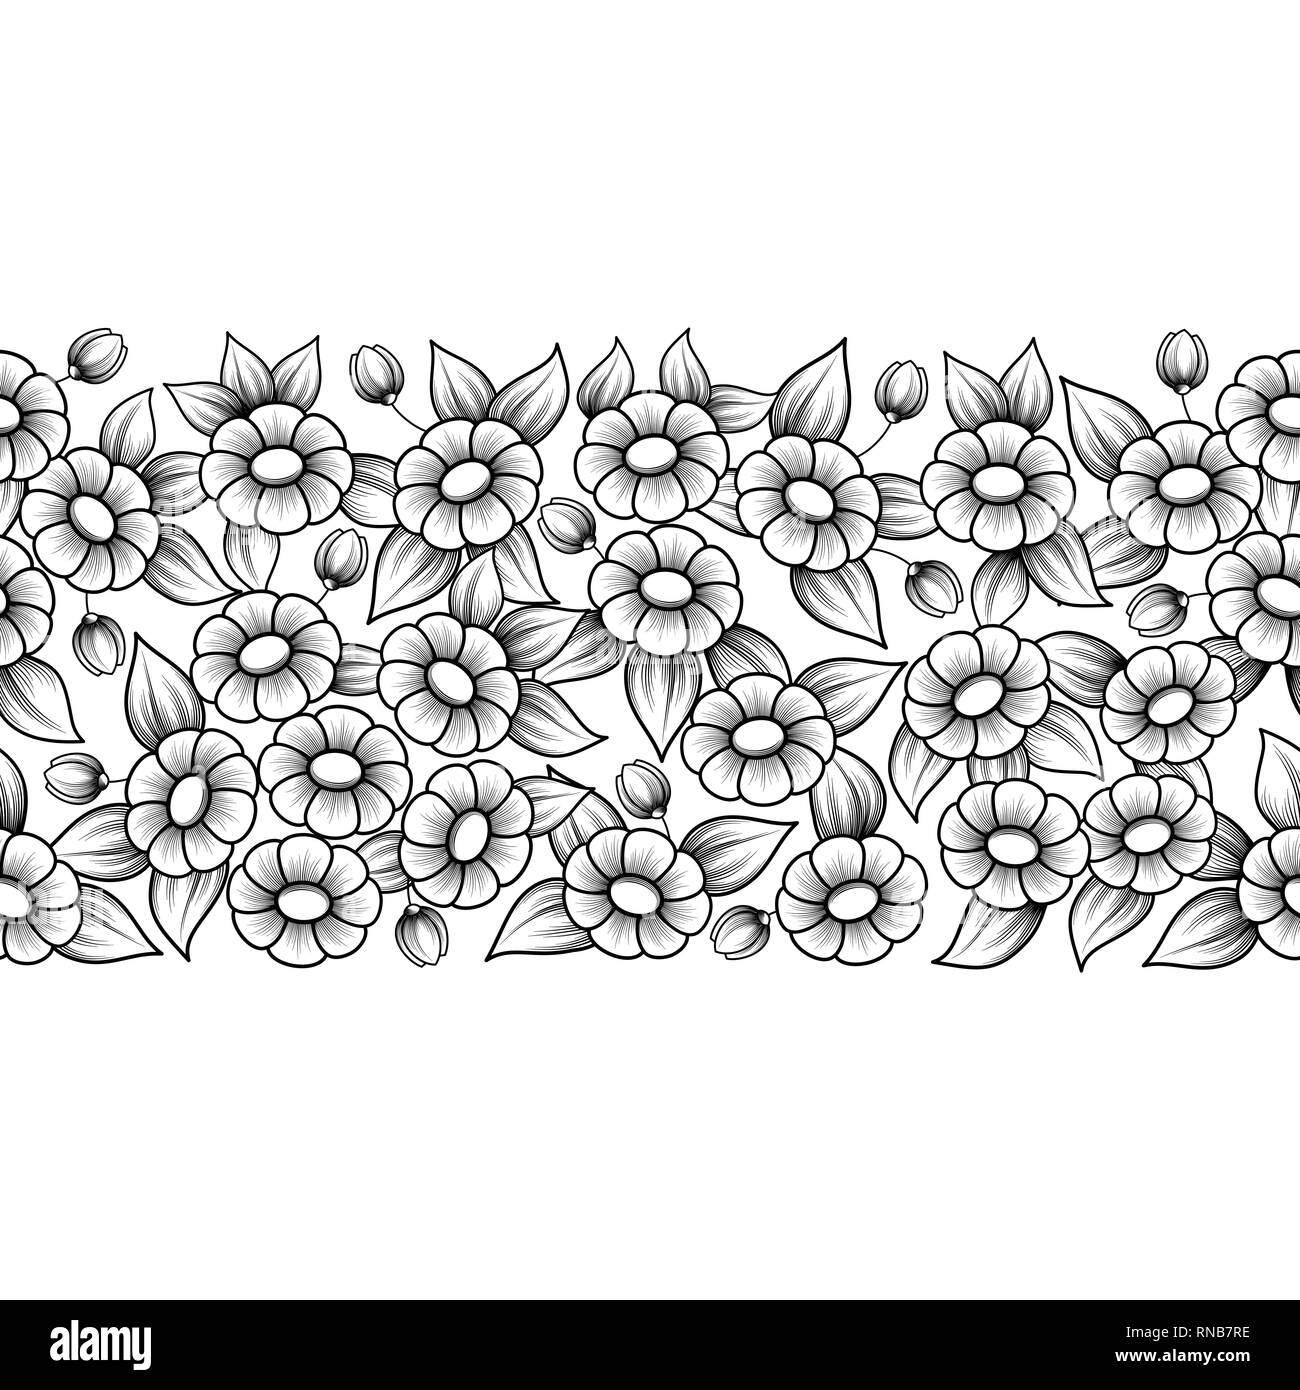 Noir et blanc motif floral seamless daisy Illustration de Vecteur